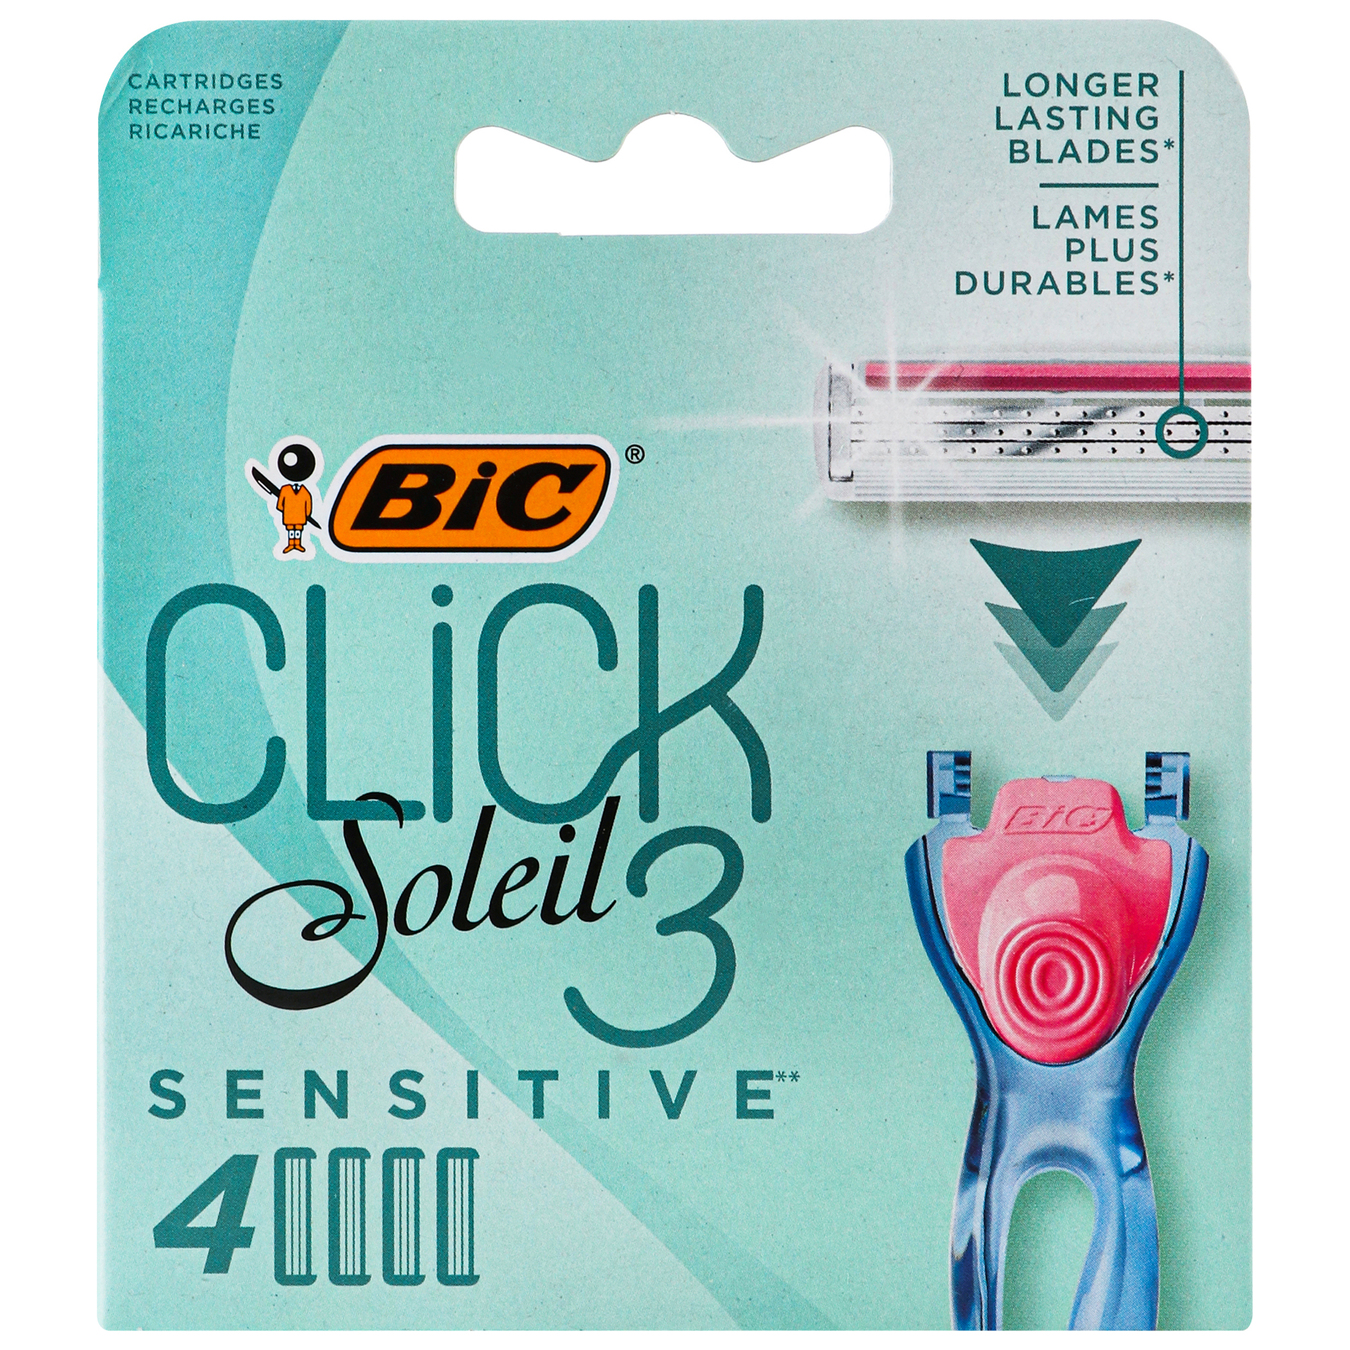 Replacement cassettes BIC Click Soleil 3 for women's shaving 4 pcs